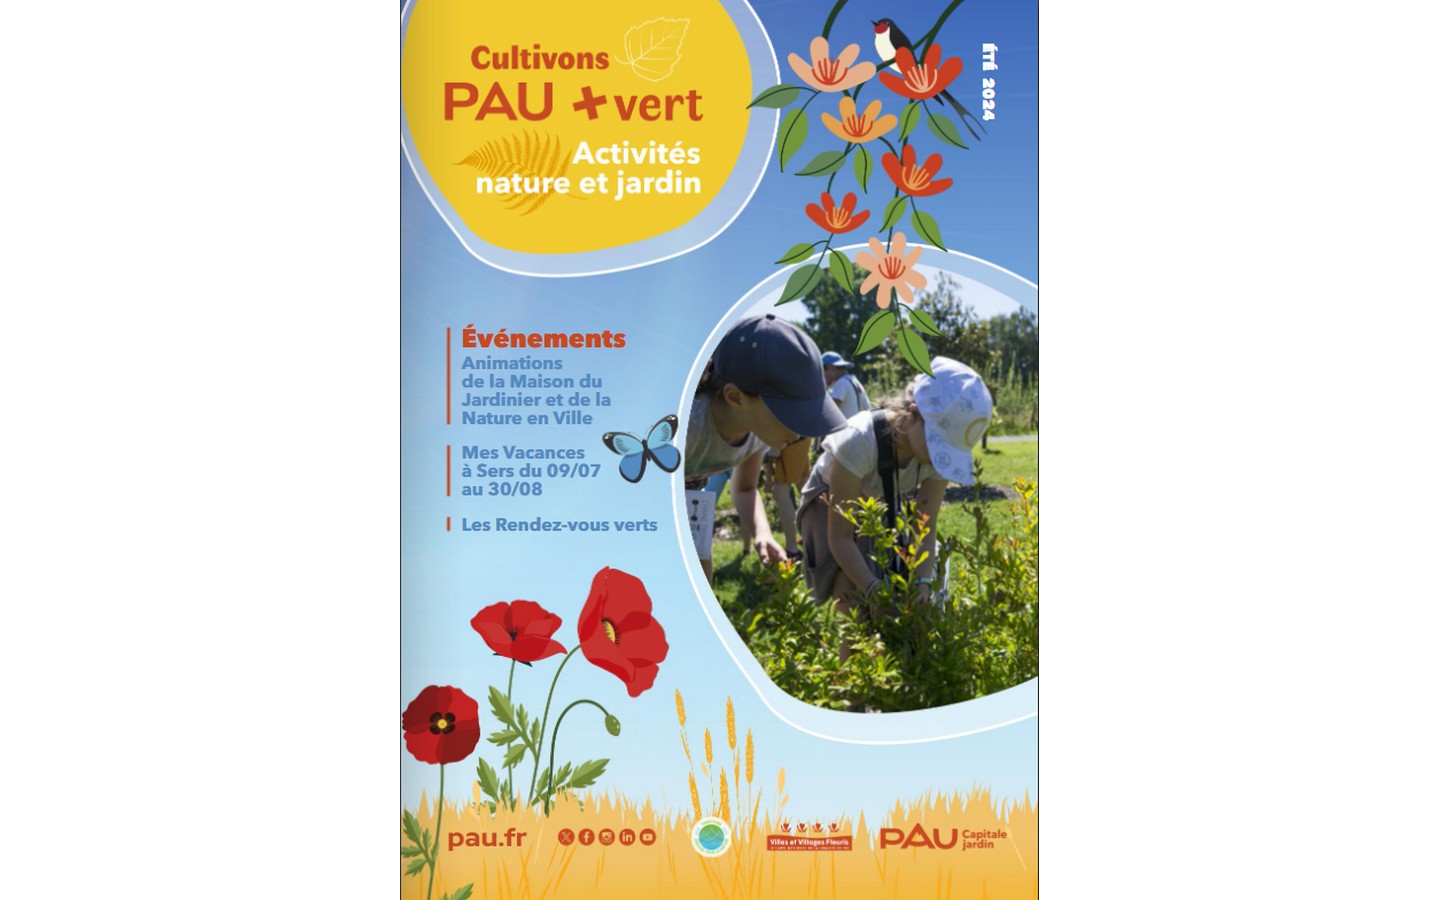 Cultivons Pau + Vert - Activités nature et jardin